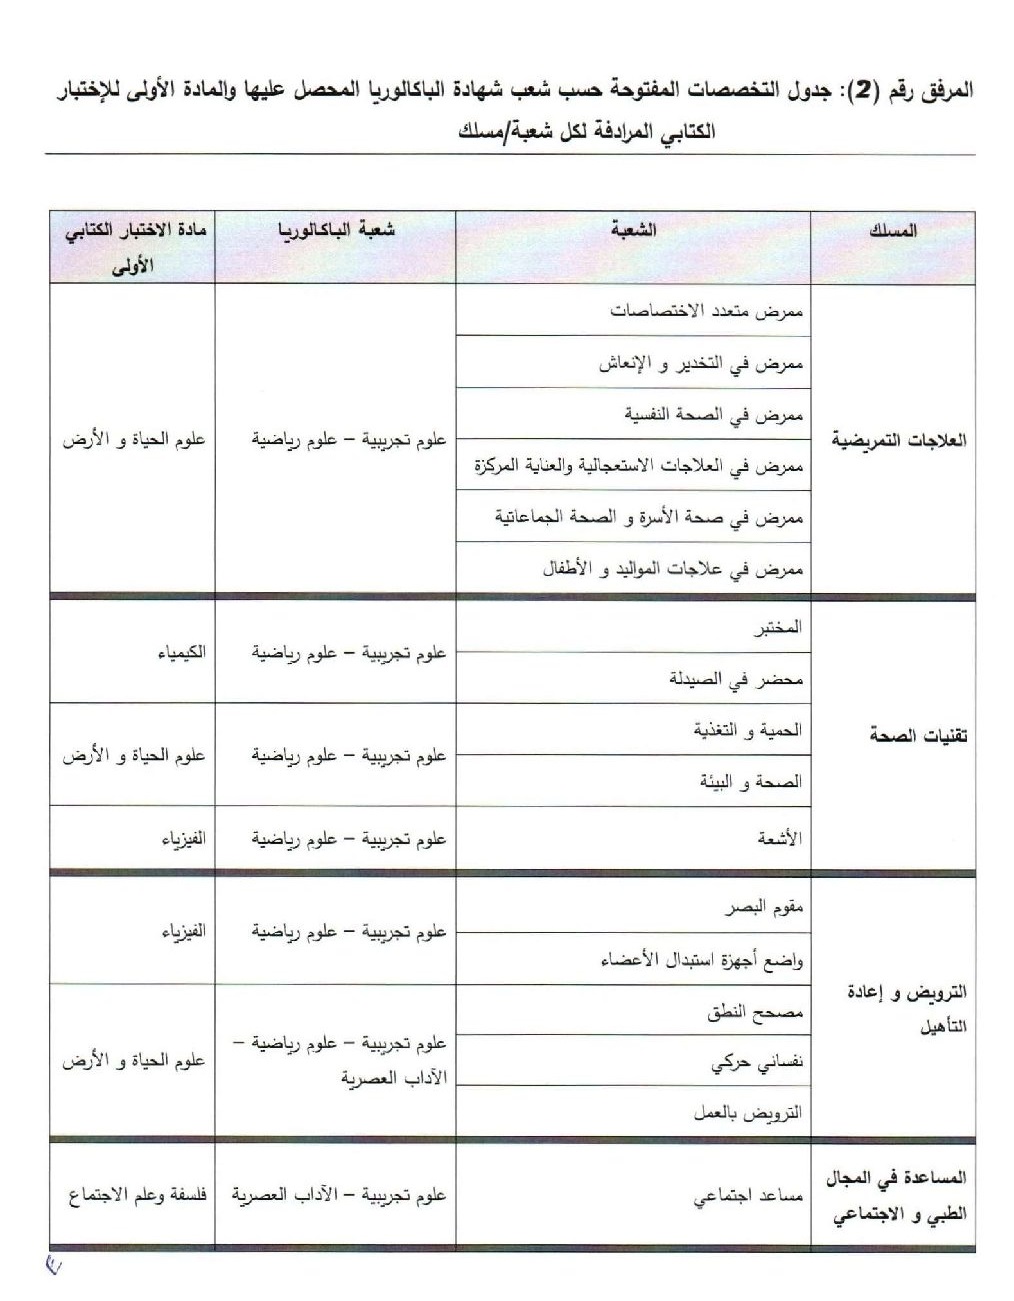 جدول التخصصات المفتوحة حسب شعب شهادة البكالوريا المحصل عليها والمادة الأولى للاختبار الكتابي المرادفة لكل شعبة/مسلك